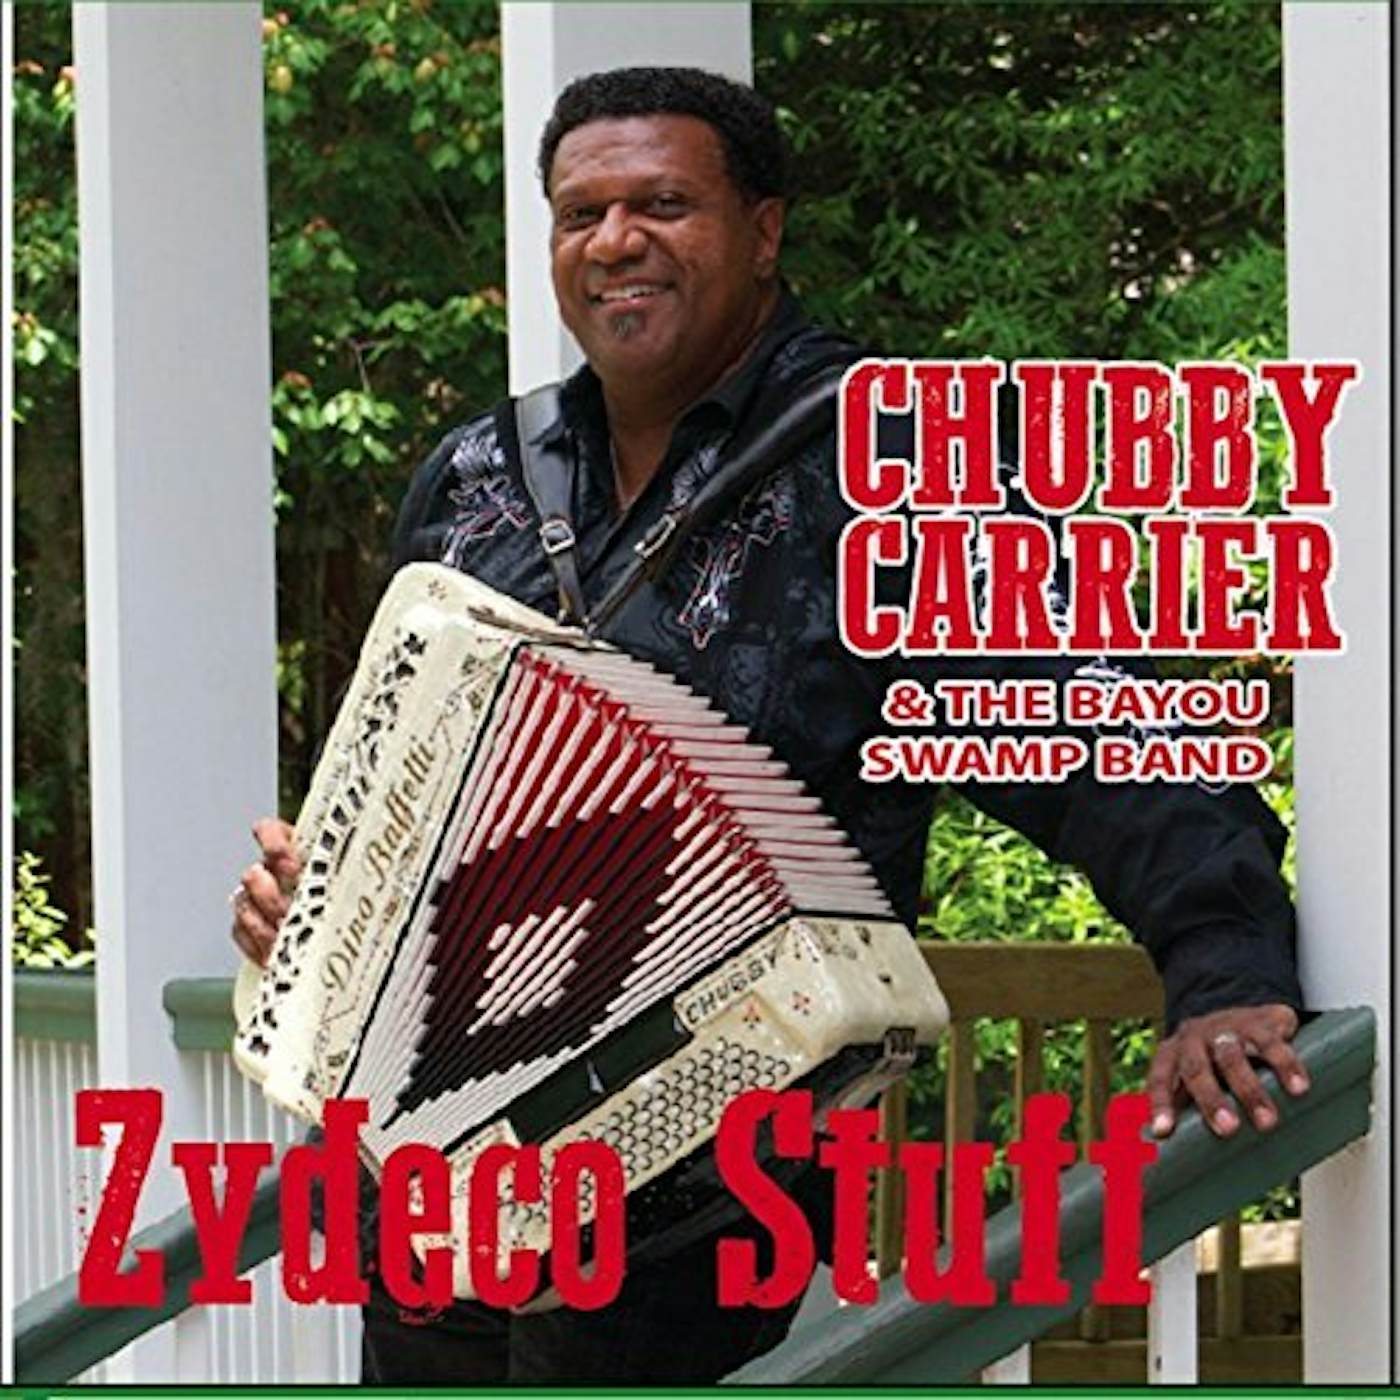 Chubby Carrier ZYDECO STUFF CD